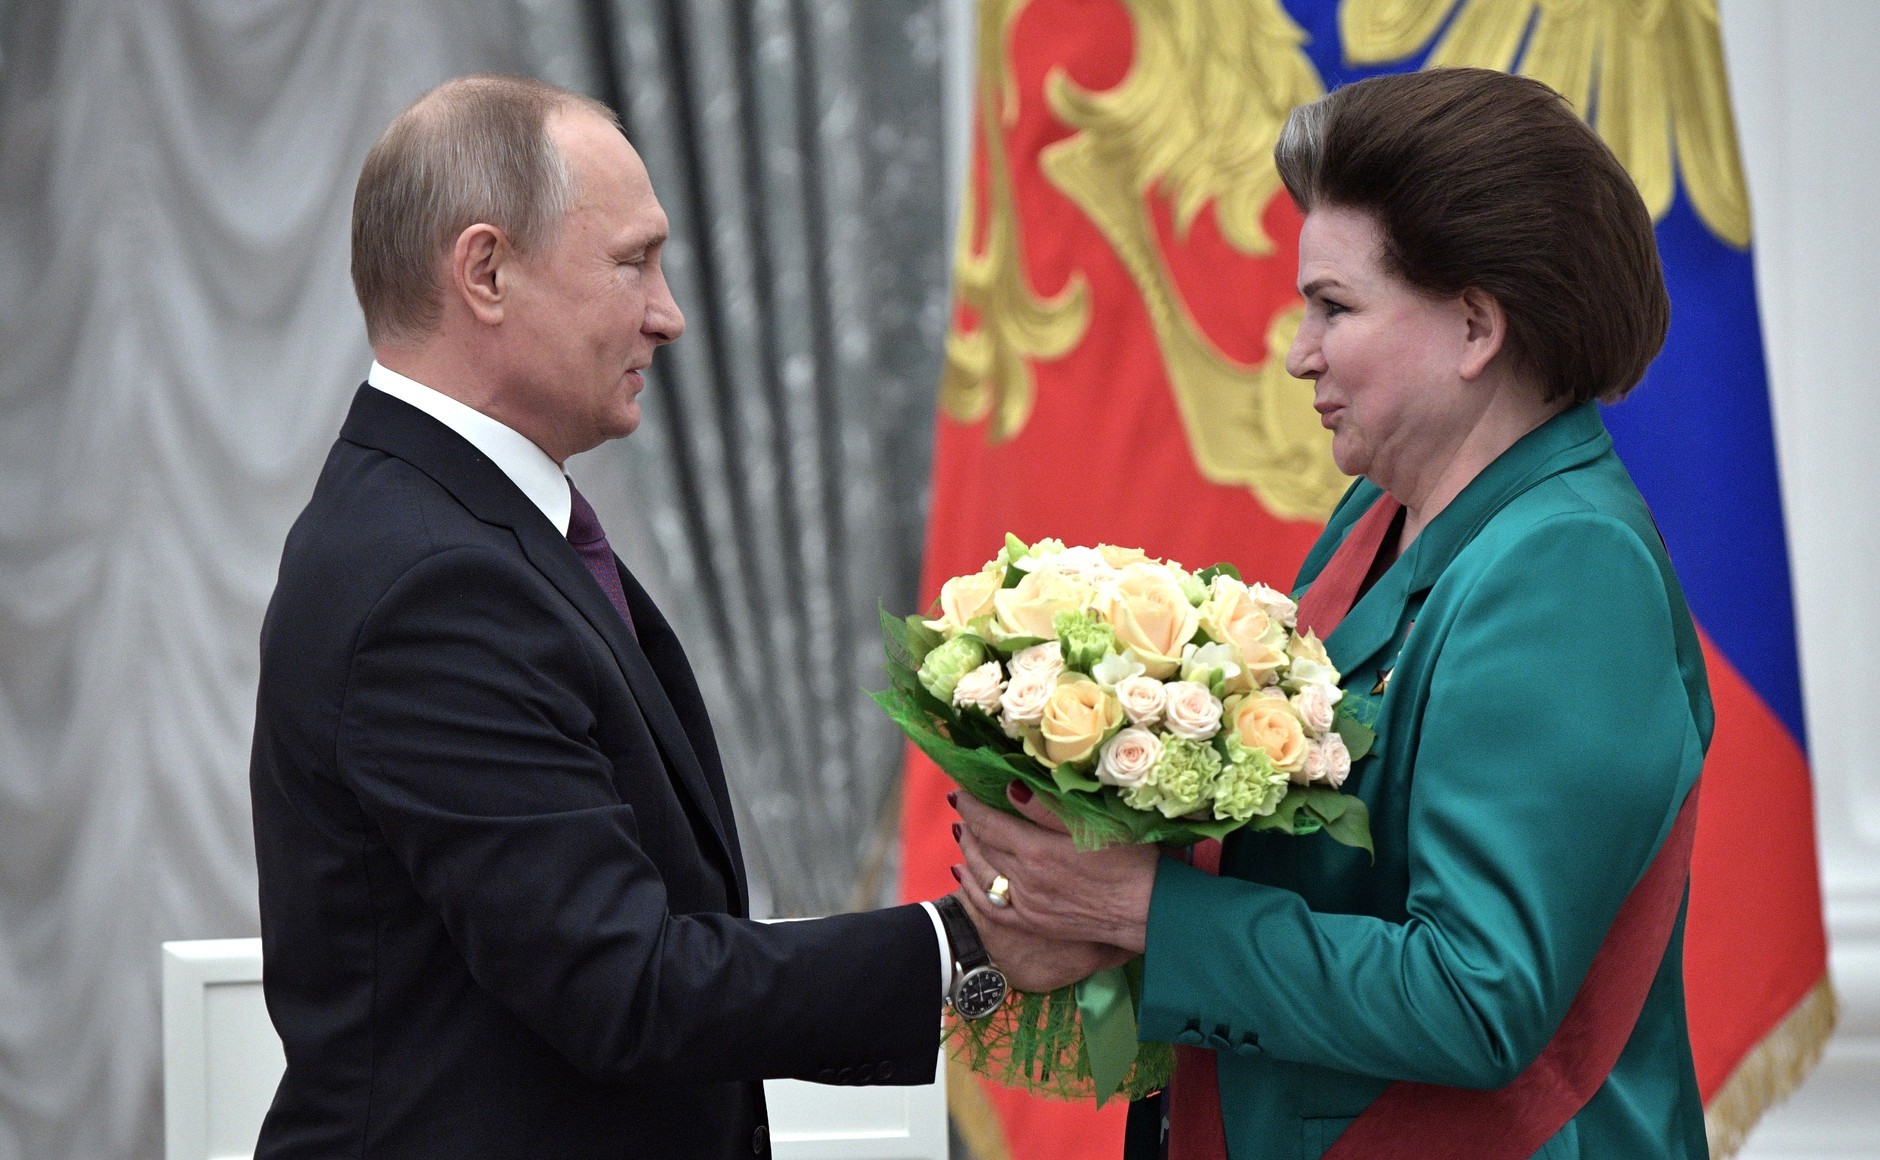 Maj 2017: Predsednik Vladimir Putin in poslanka Valentina Tereškova, vodja parlamentarnega odbora za federalno in lokalno upravo, na podelitvi državnih nagrad v Kremlju